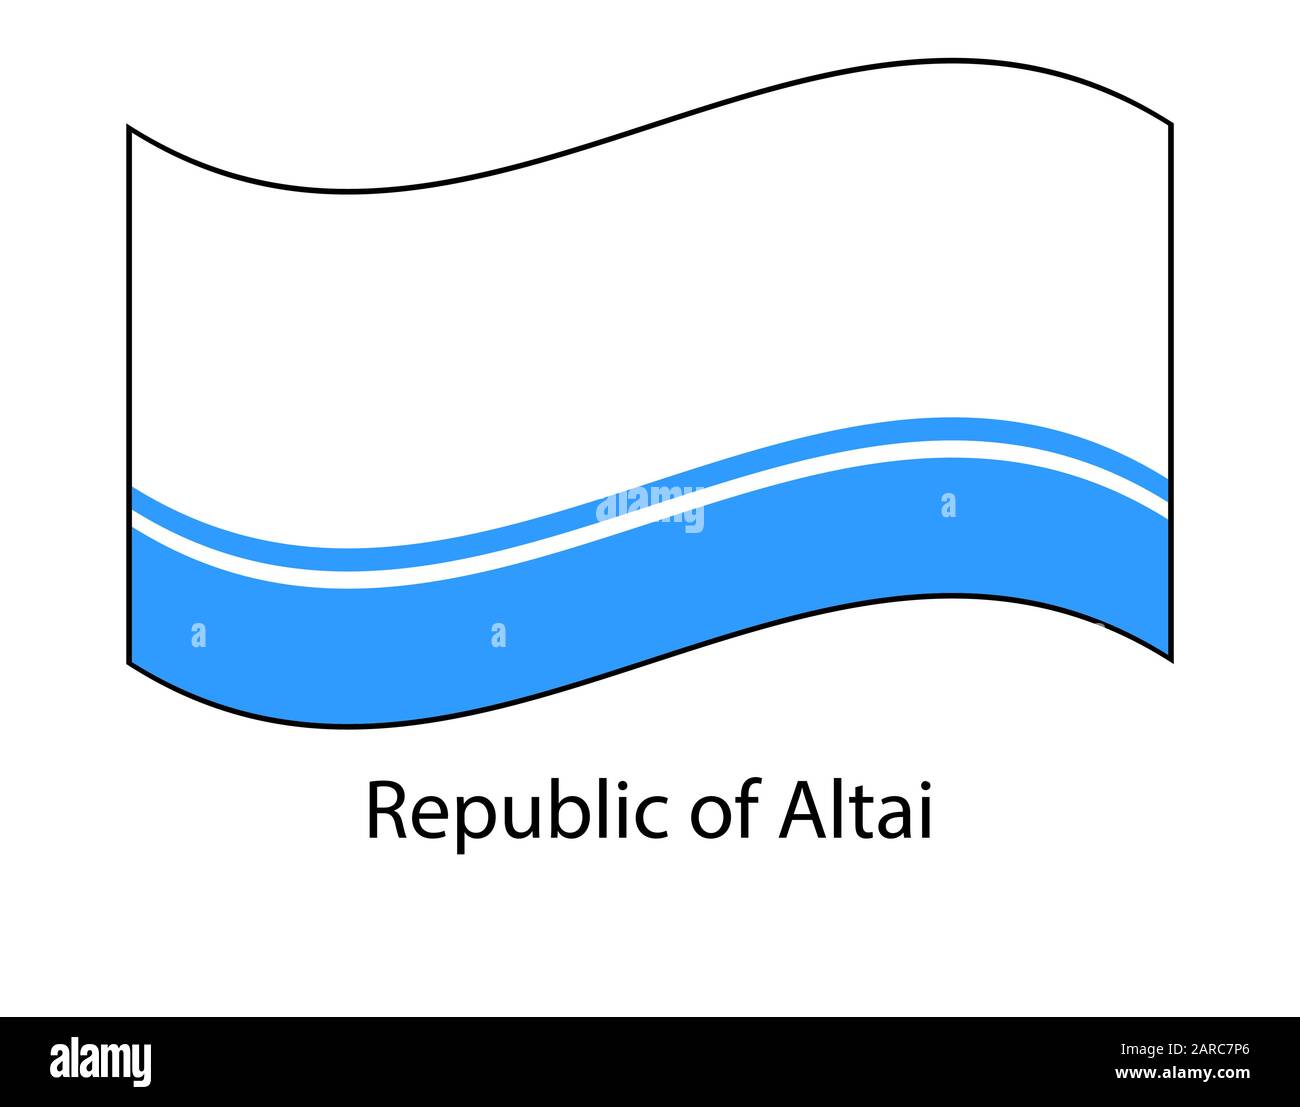 Drapeau de la République de l'Altaï, en Russie. L'état de la Fédération de Russie. République de l'Altaï, Gorno-Altaisk. Illustration de Vecteur